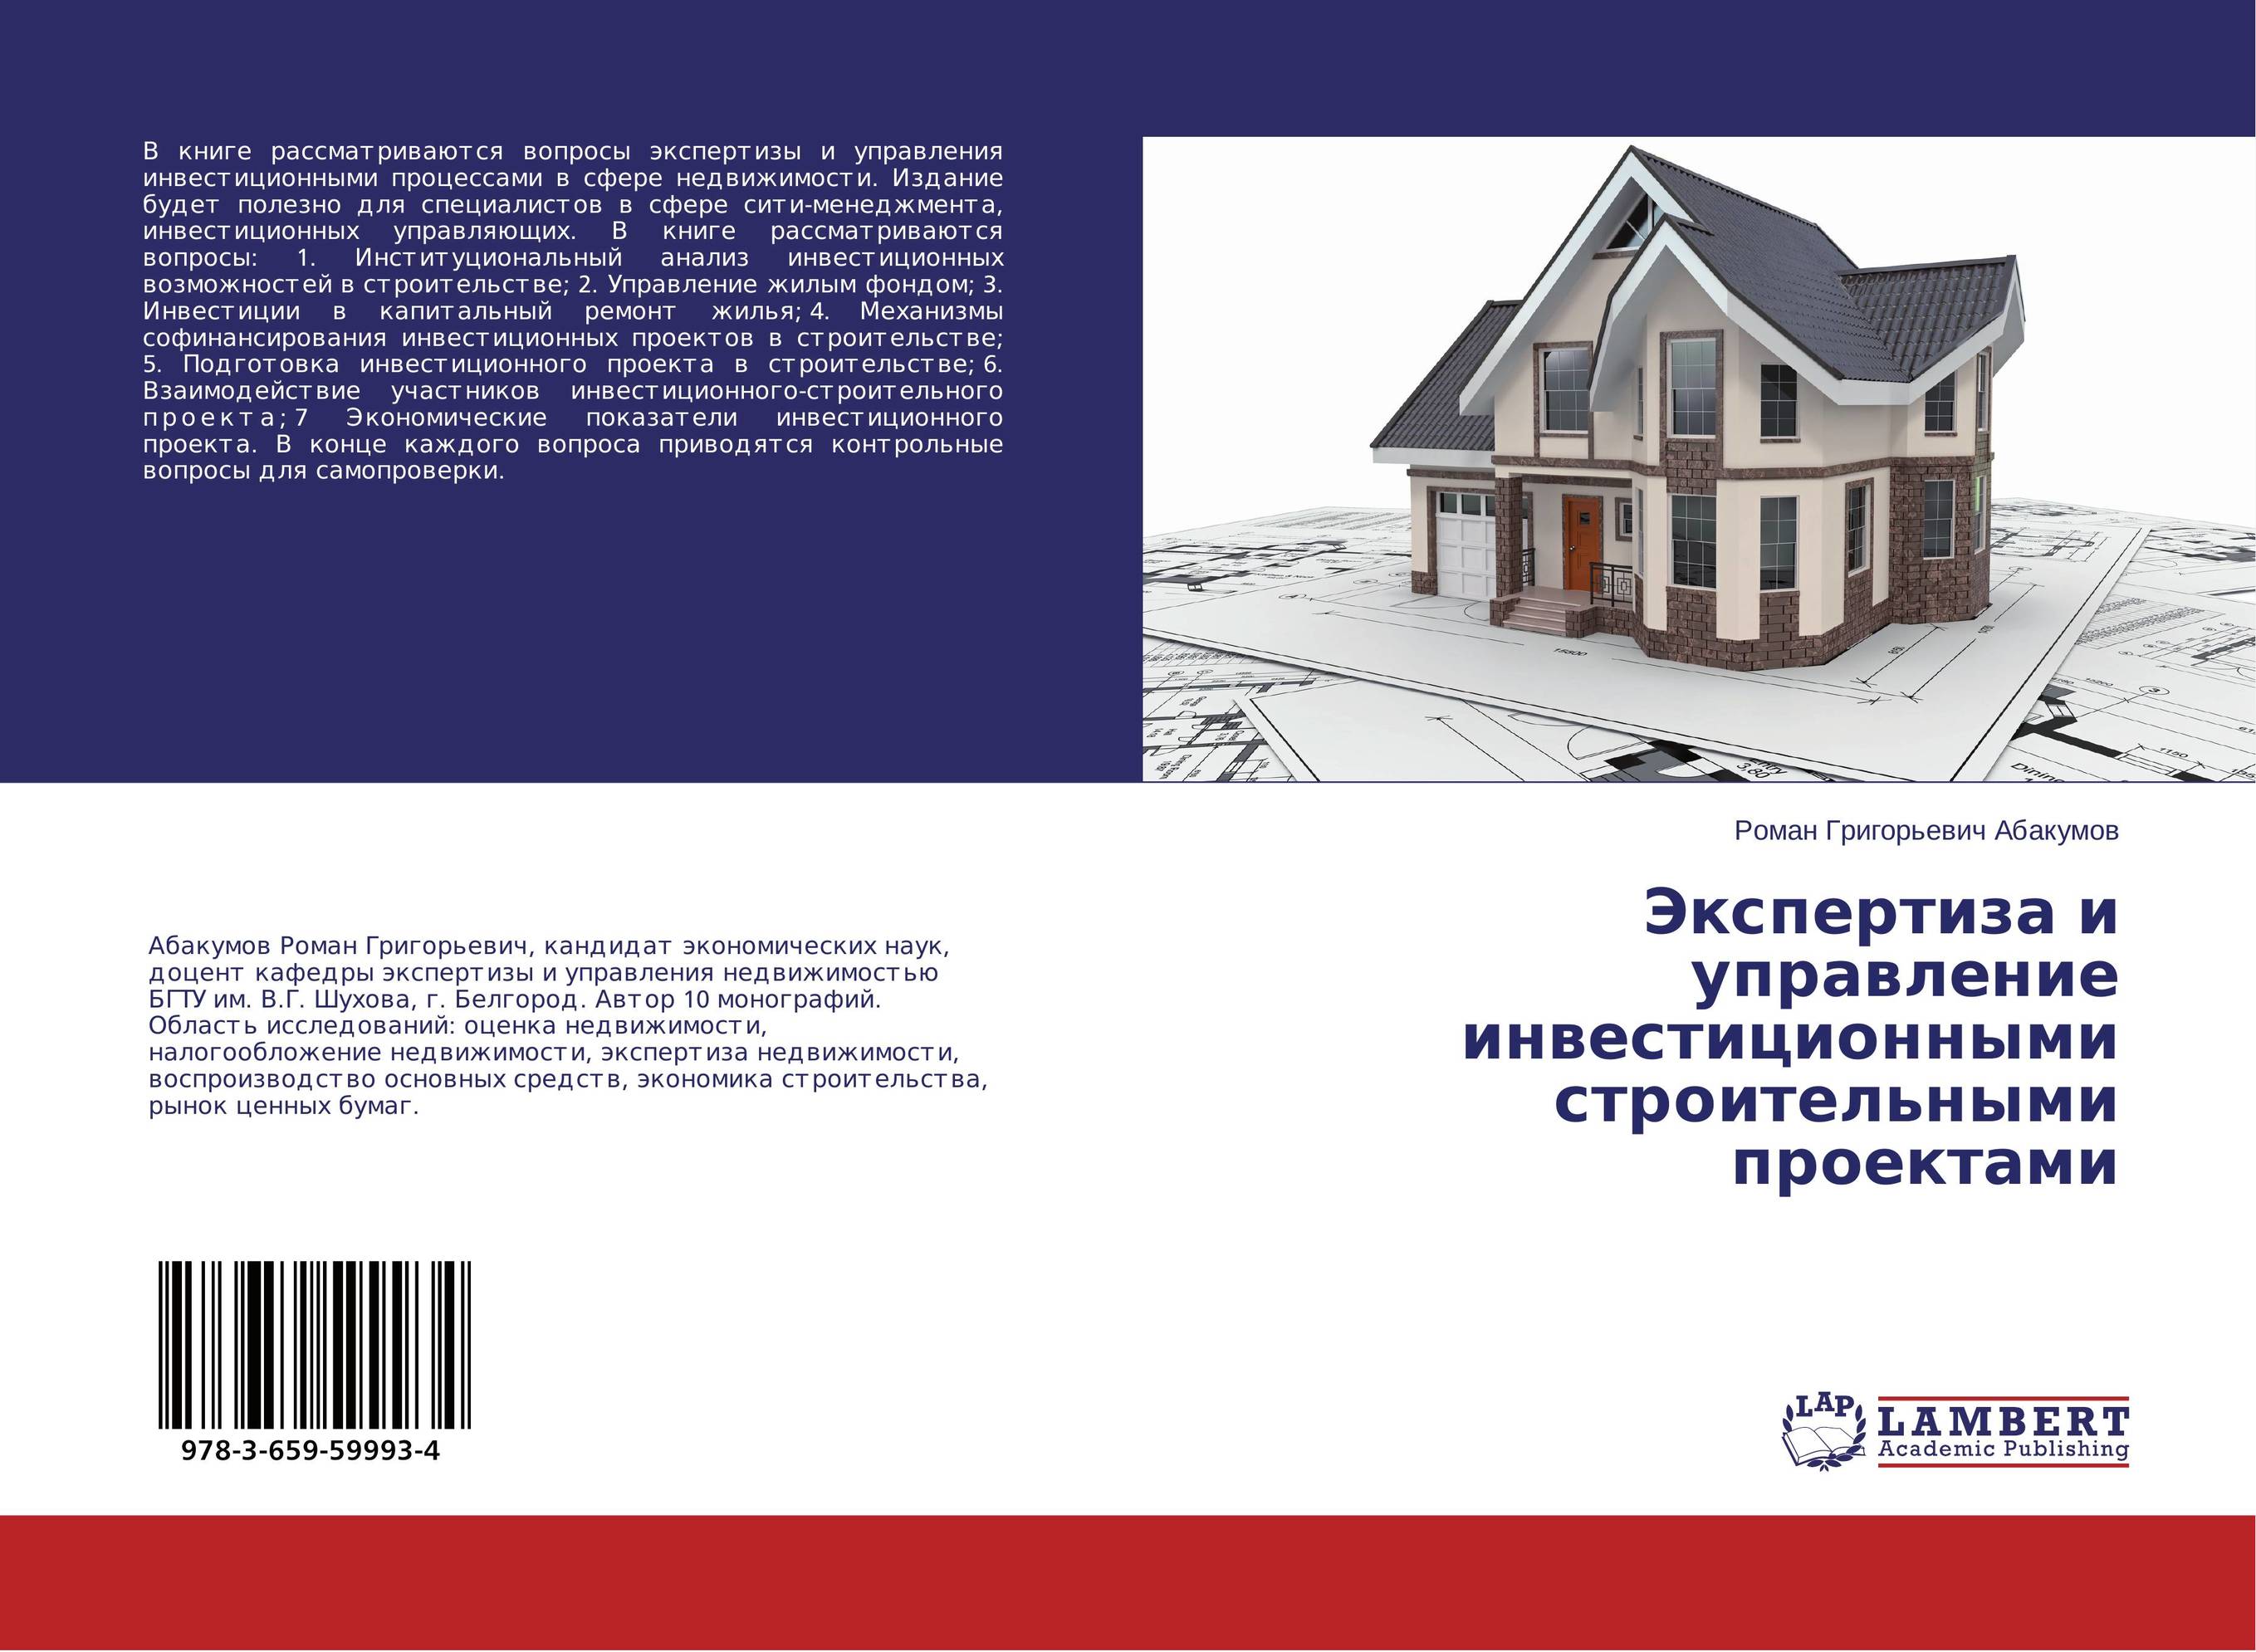 
        Экспертиза и управление инвестиционными строительными проектами..
      